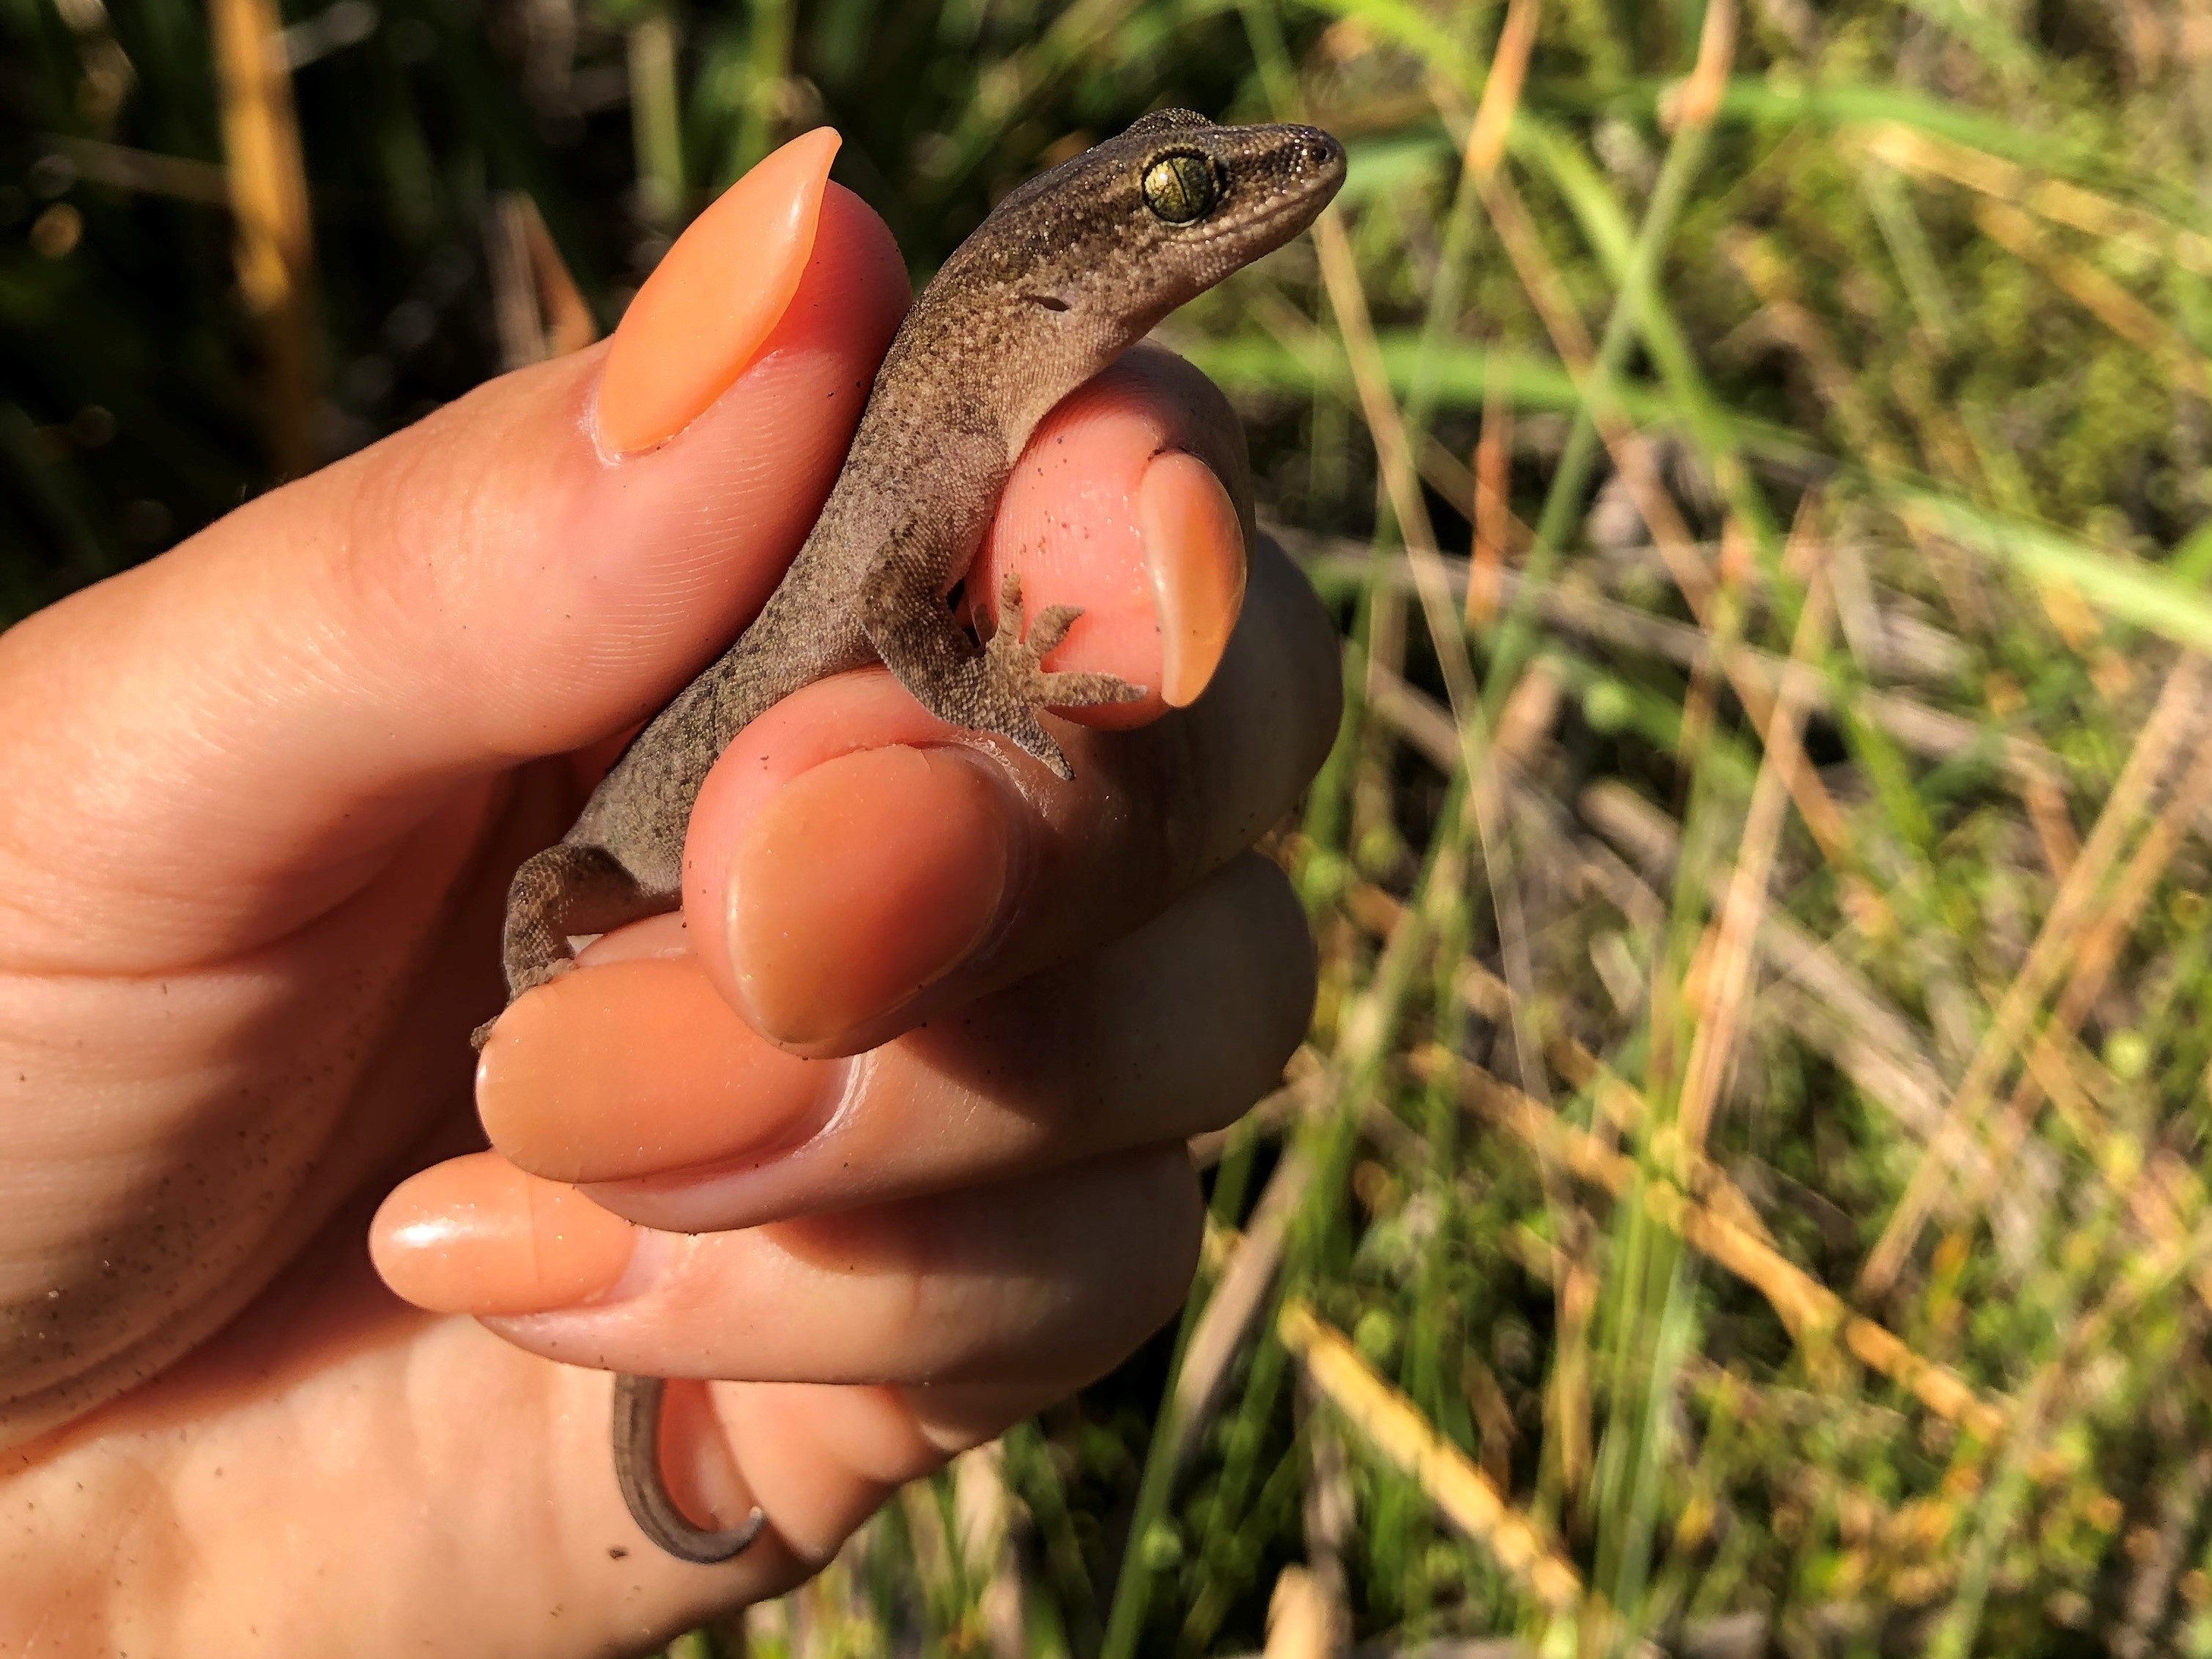 A Muriwai gecko in Aimee’s hand